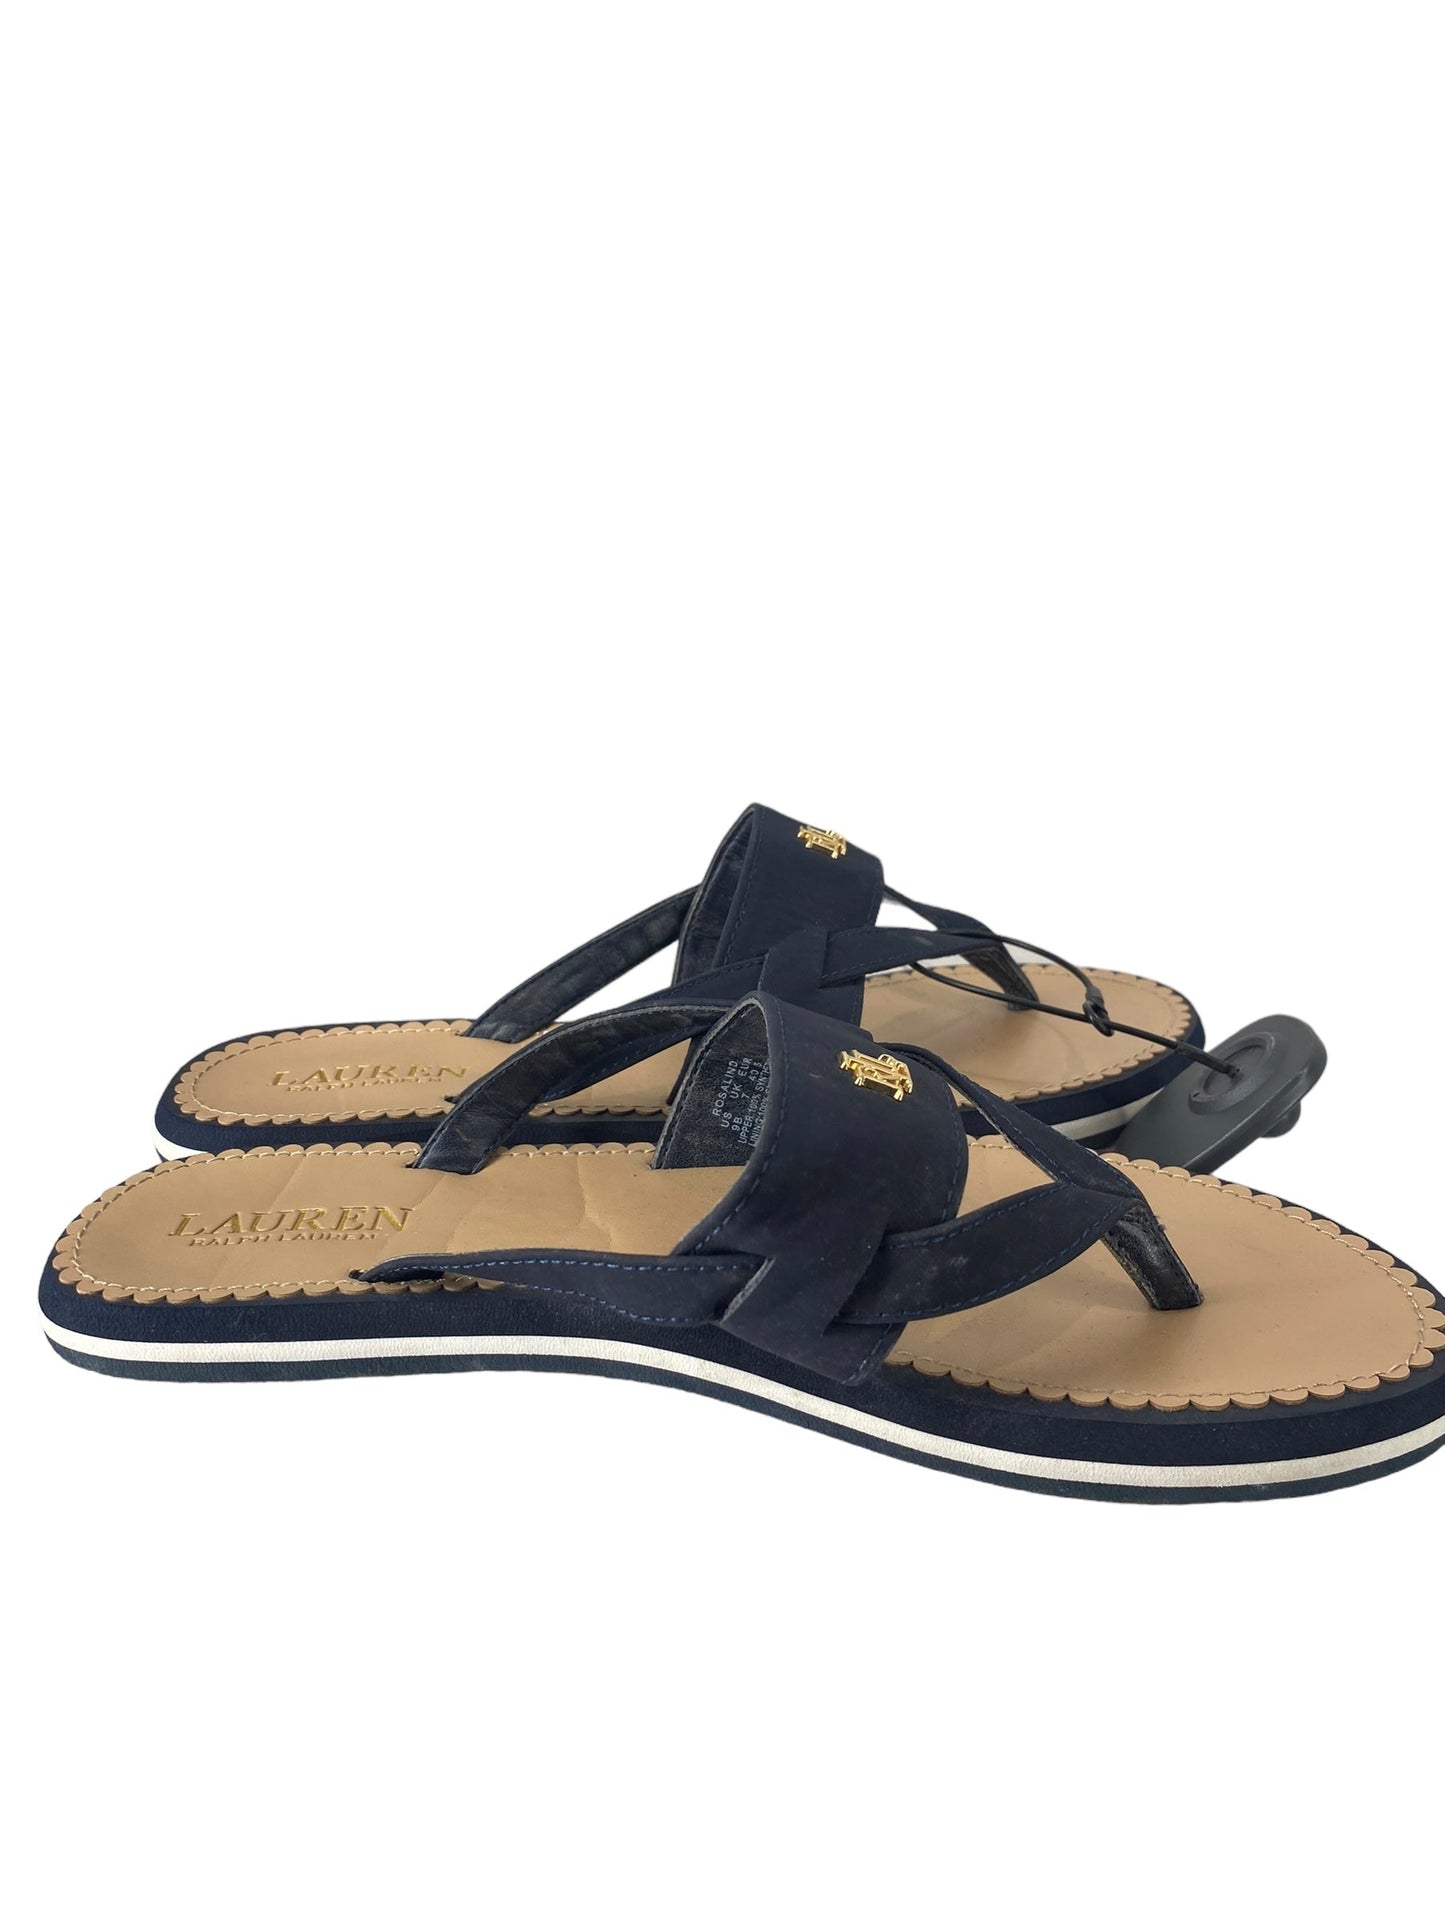 Black Sandals Flip Flops Ralph Lauren, Size 9